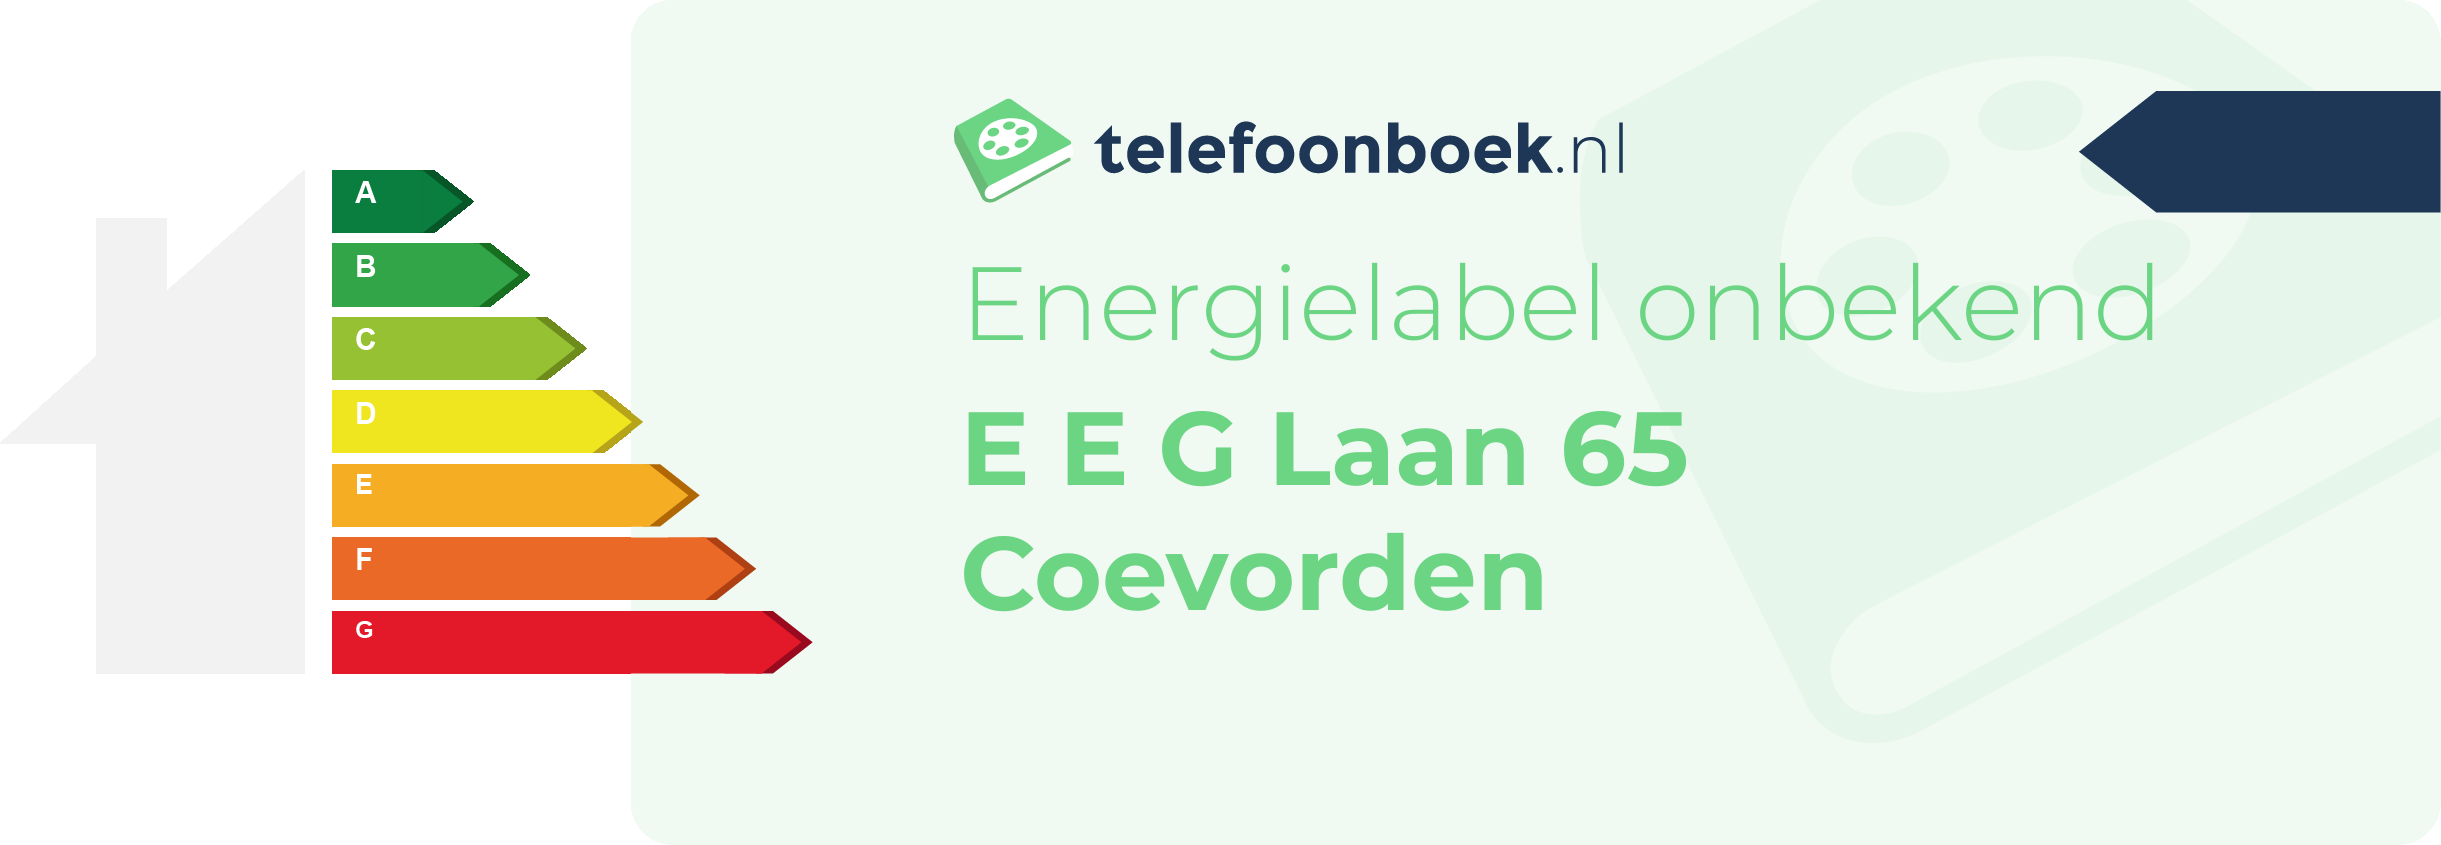 Energielabel E E G Laan 65 Coevorden